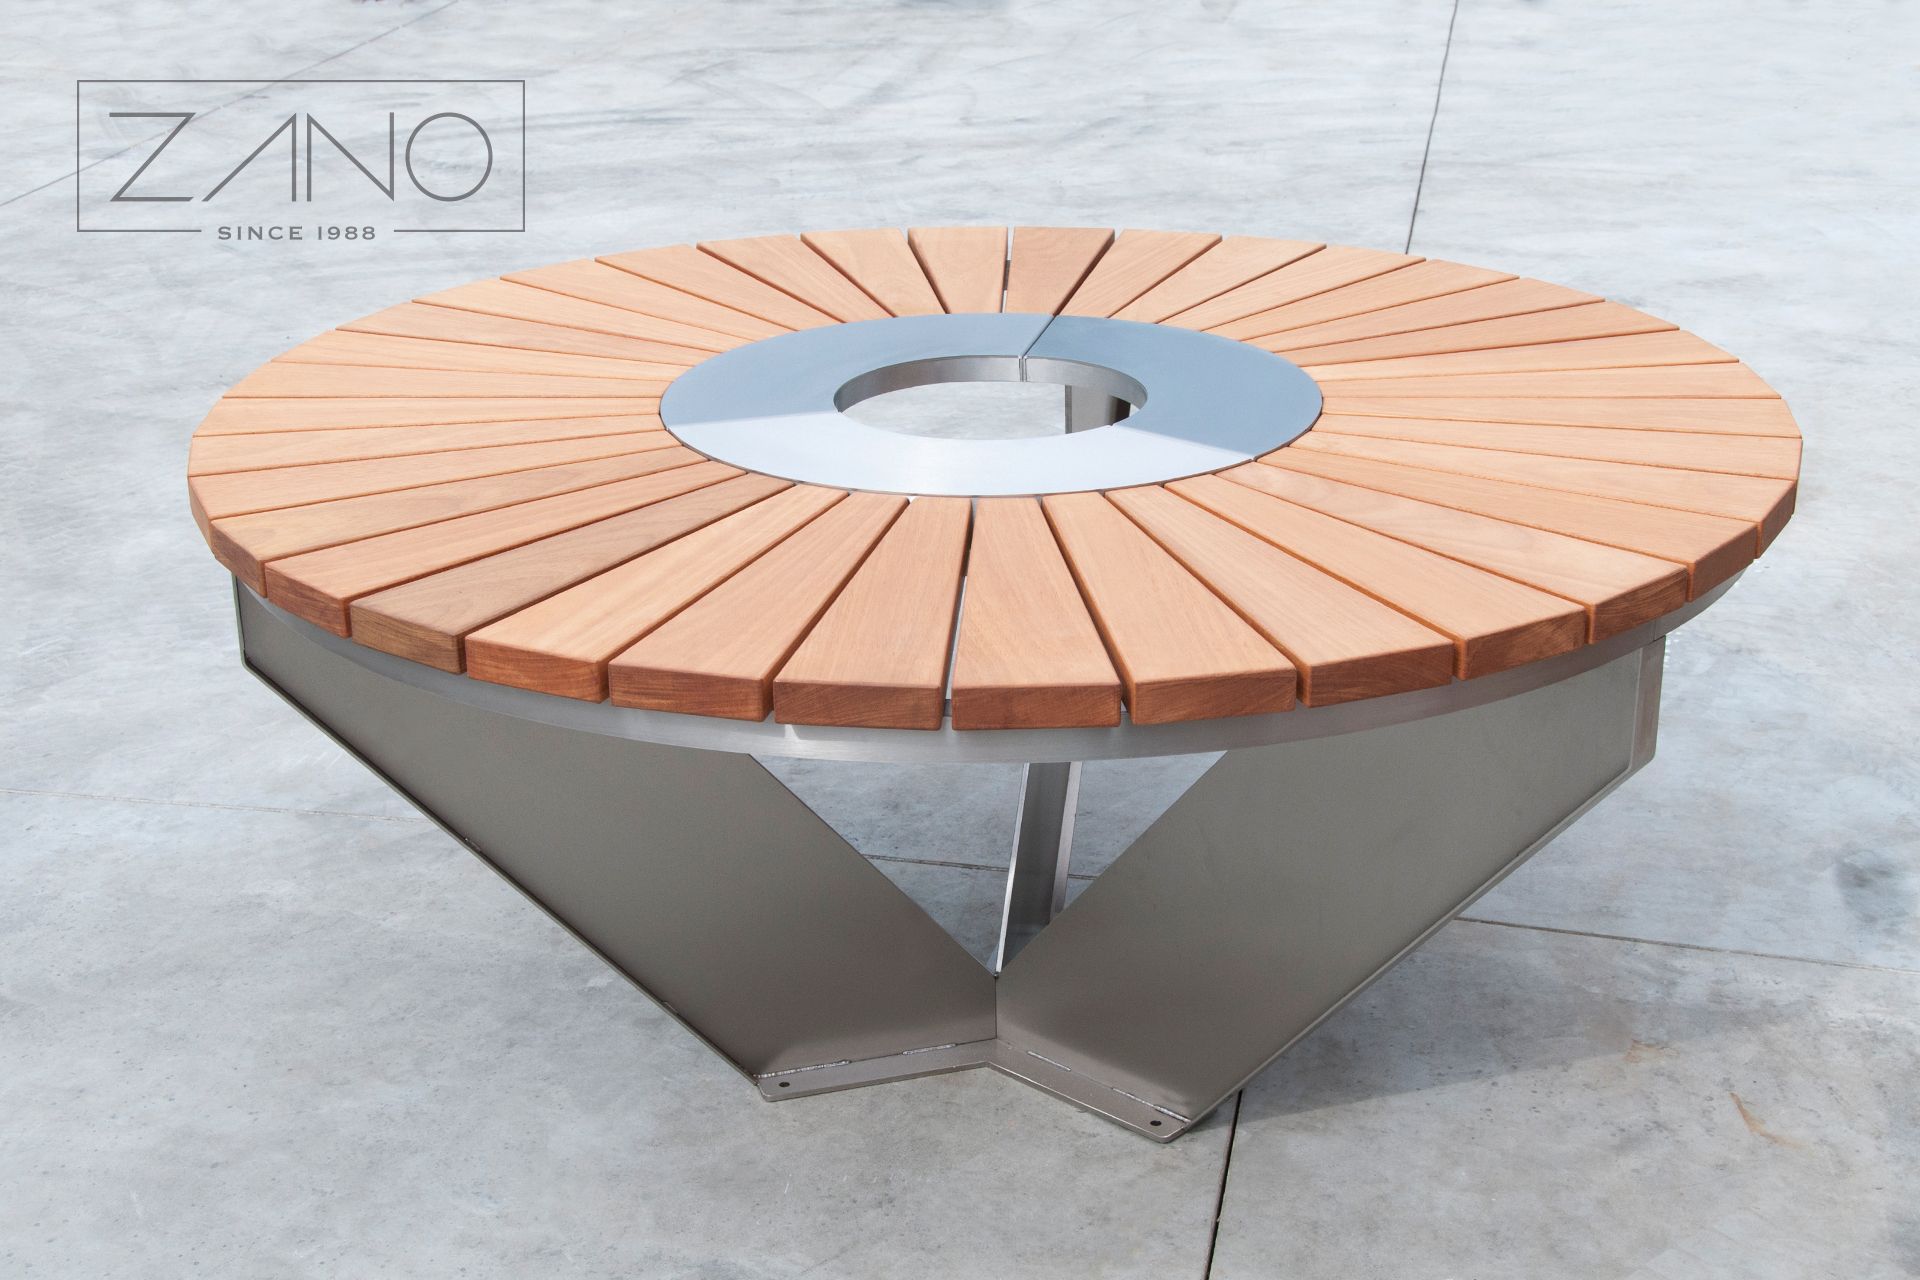 Pyöreä teräspöytä, jossa on puinen pöytälevy